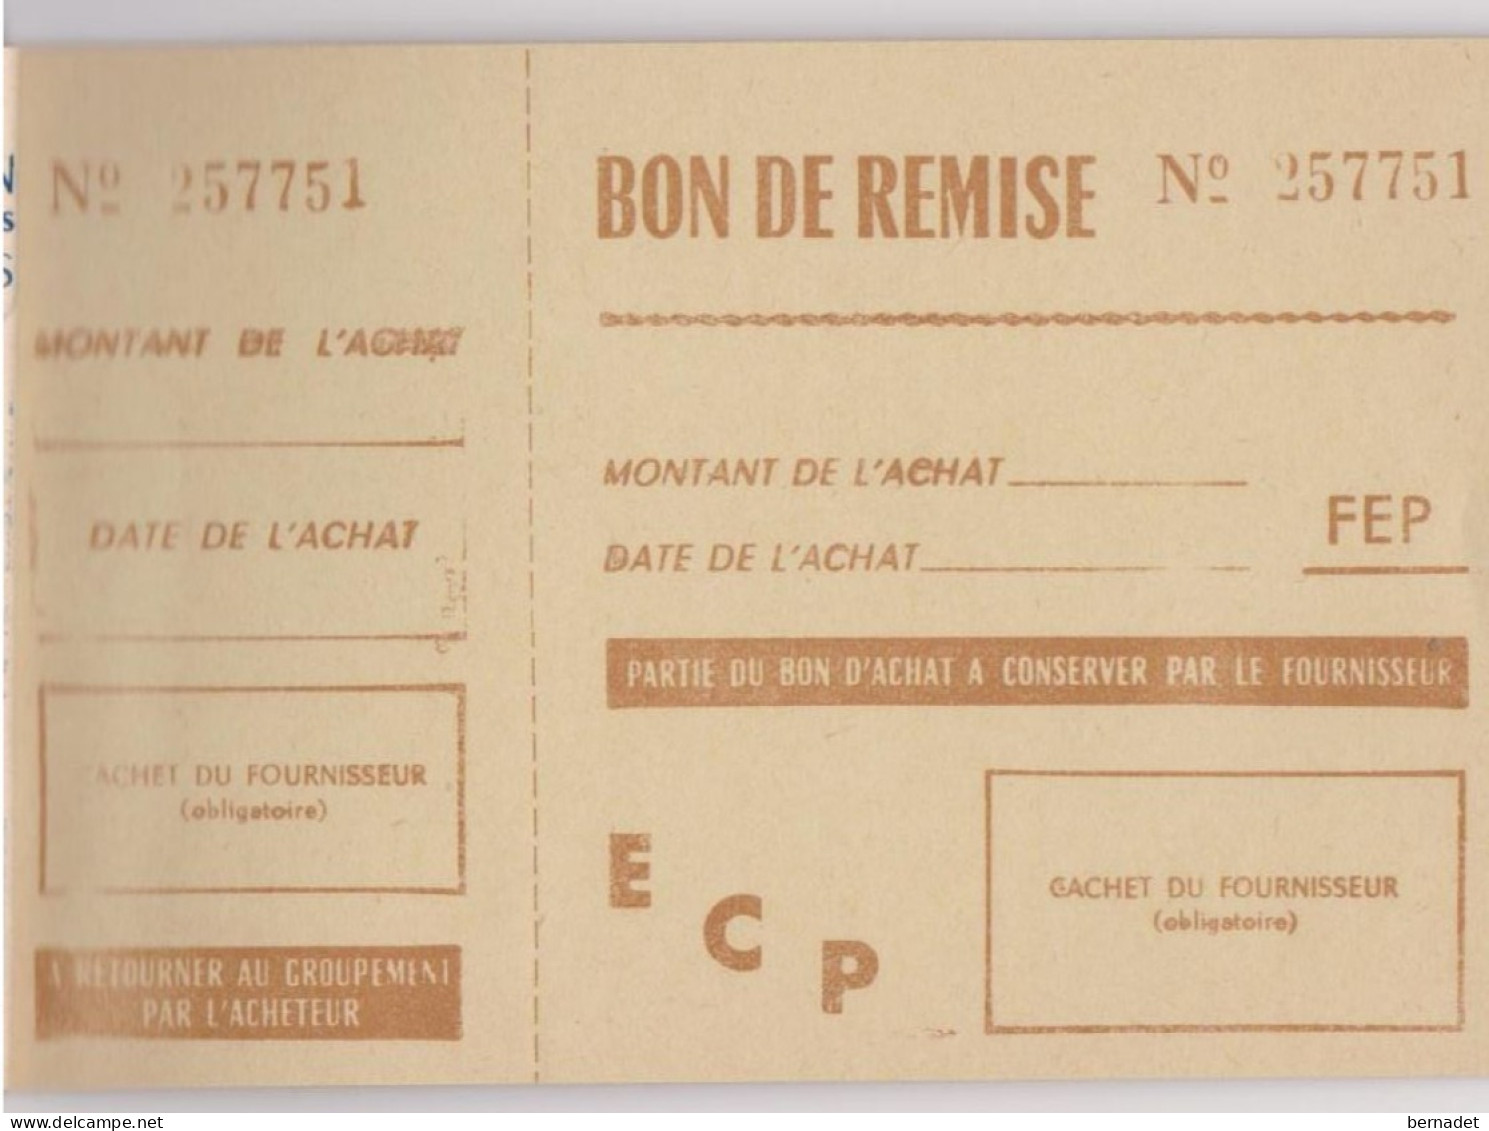 CARNET SPECIAL DE REMISES . 1962  FEDERATION DES ETUDIANTS DE PARIS . - Schecks  Und Reiseschecks